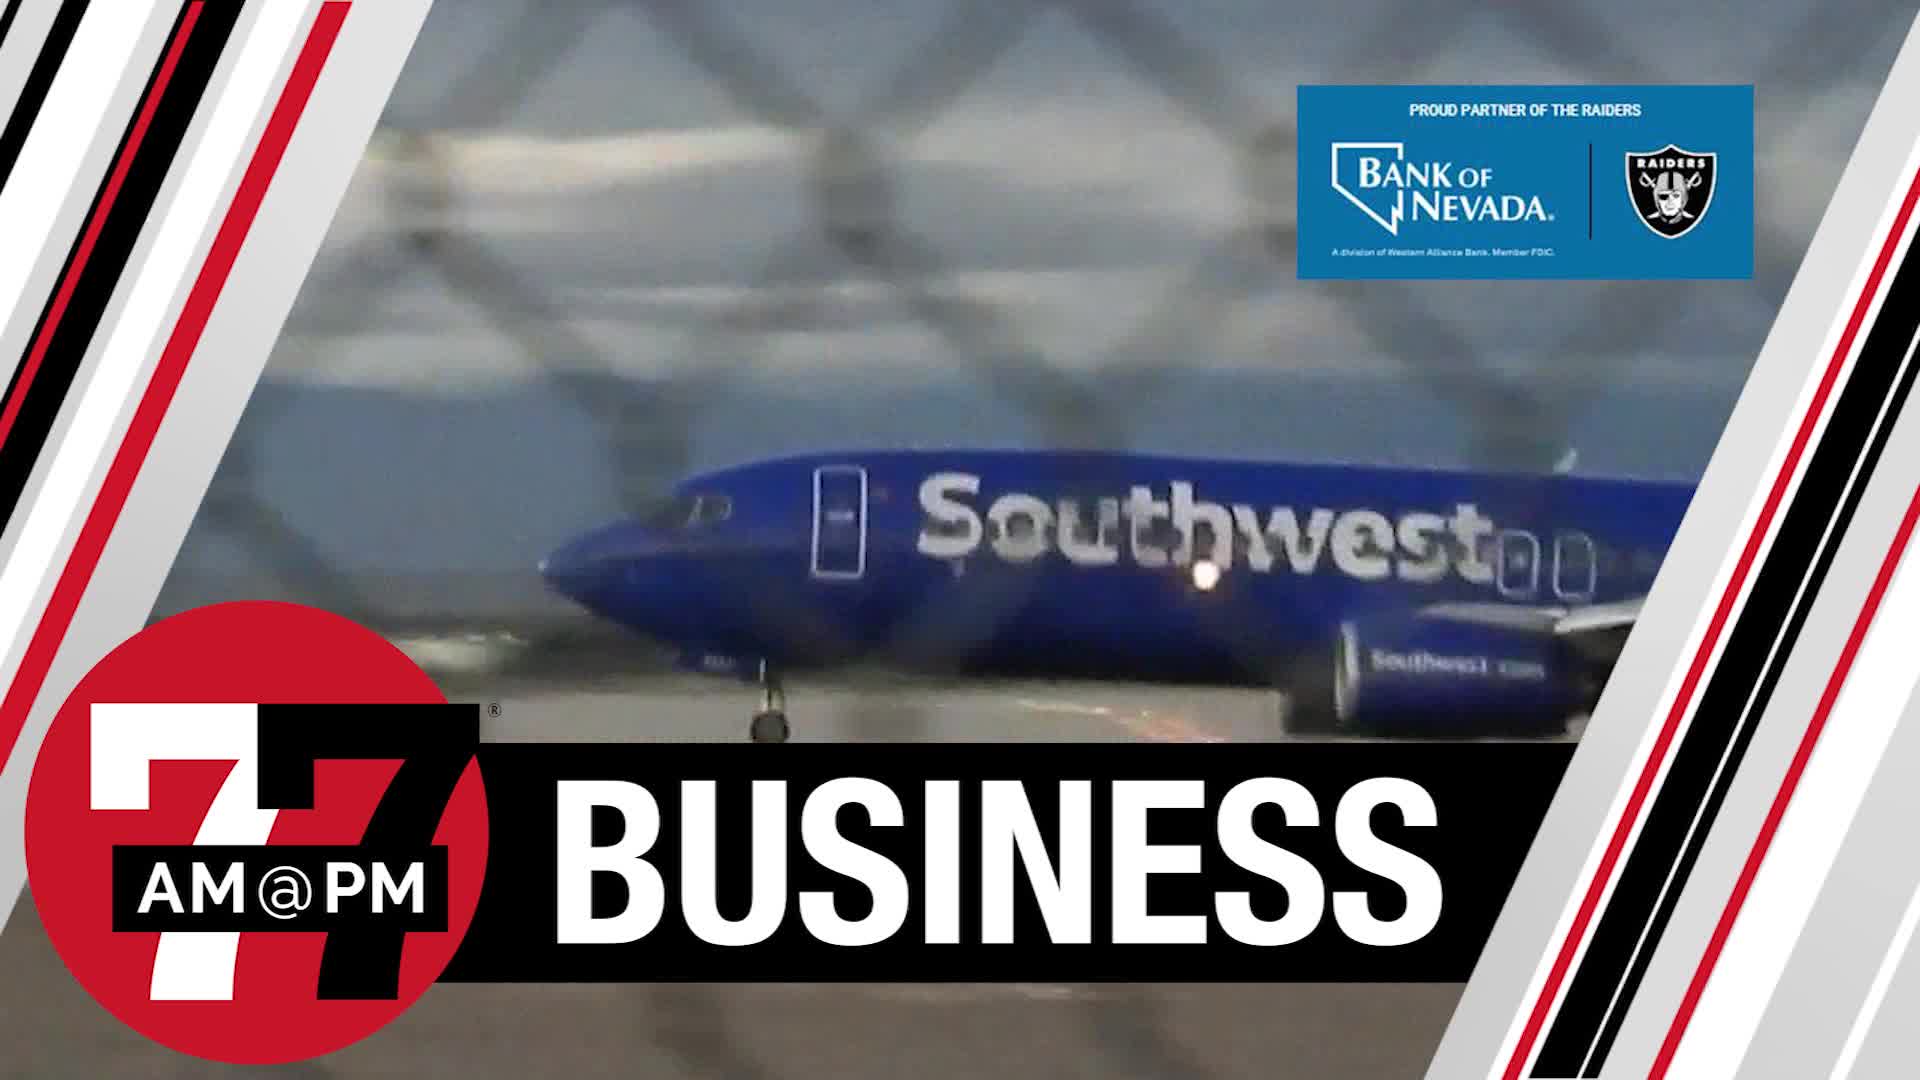 Southwest aims for Las Vegas expansion